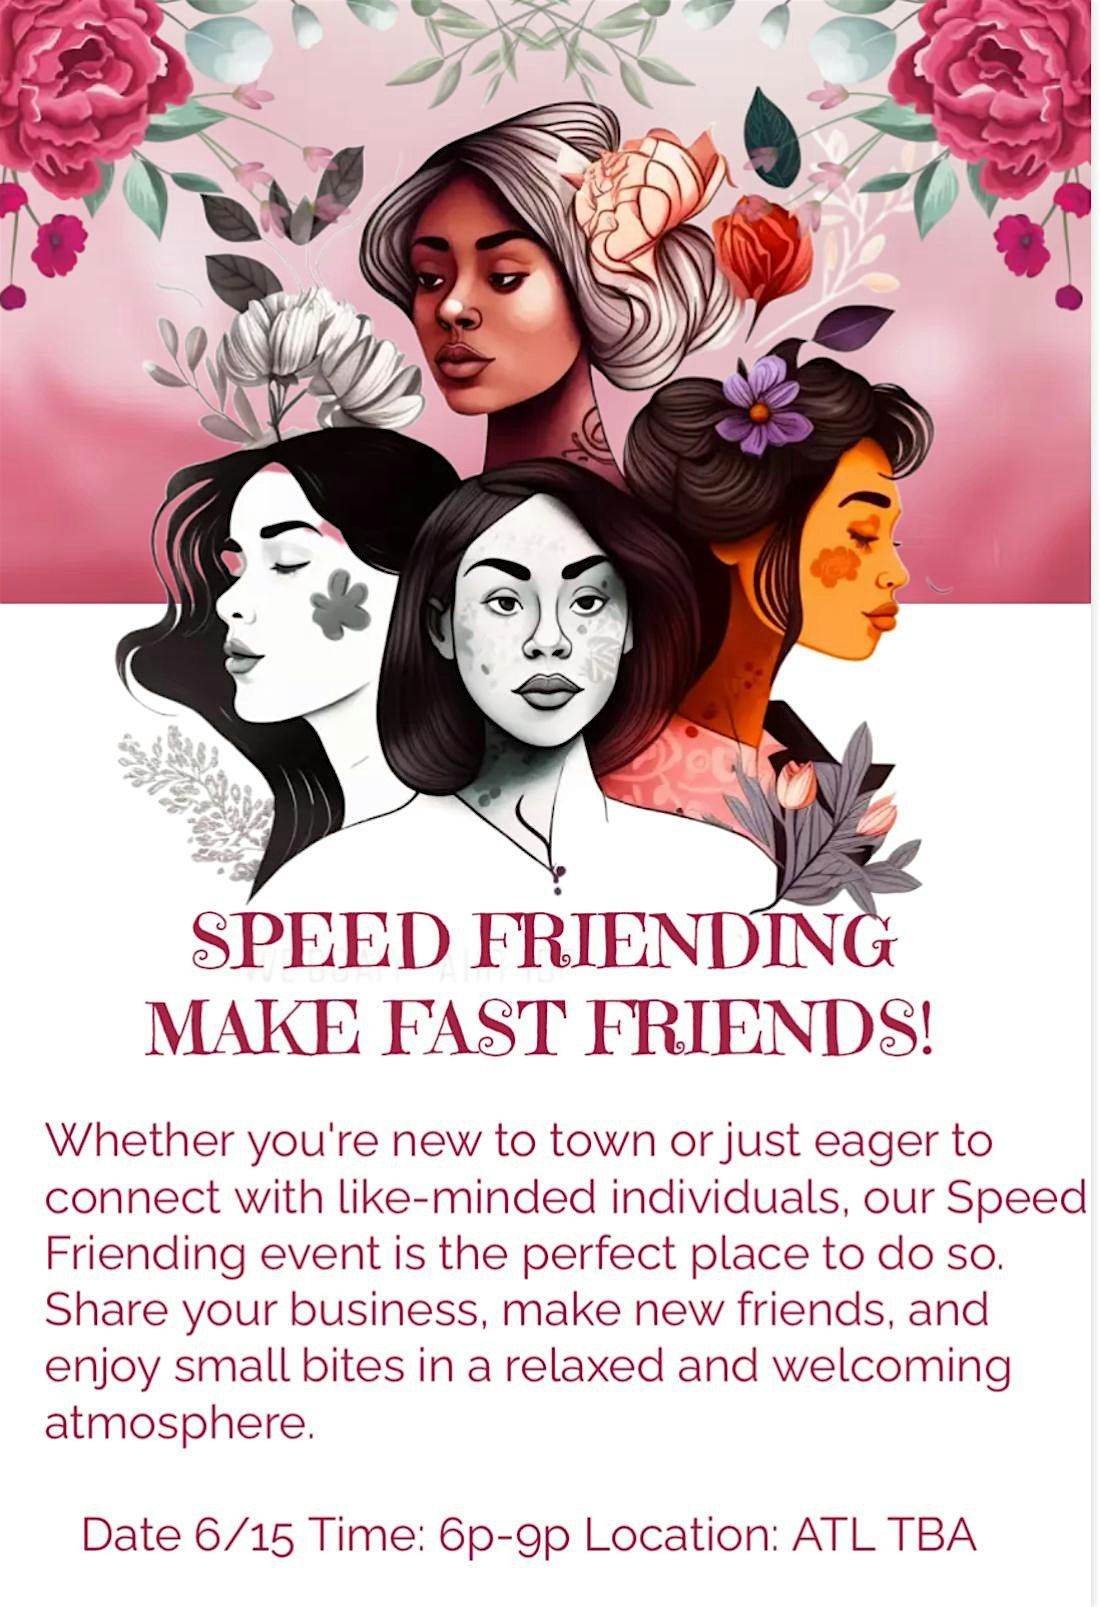 SPEED FRIENDING: MAKE FAST FRIENDS!